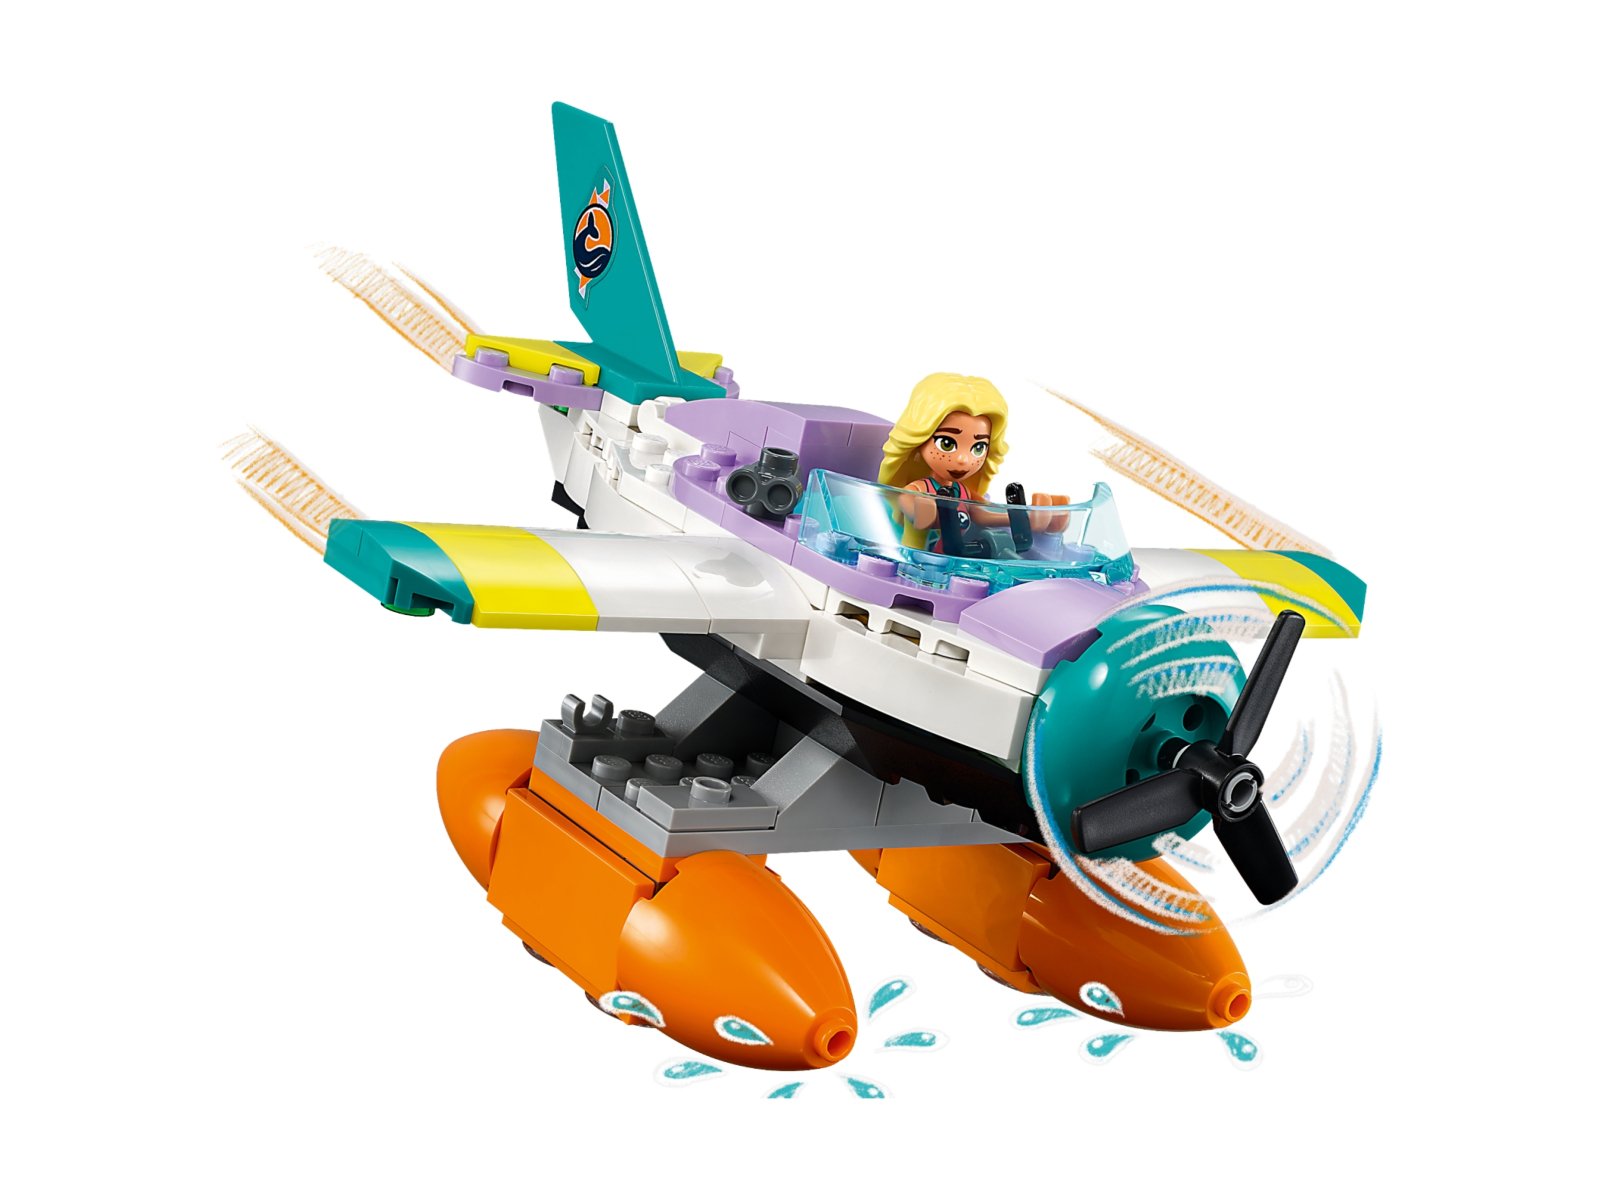 LEGO 41752 Hydroplan ratowniczy